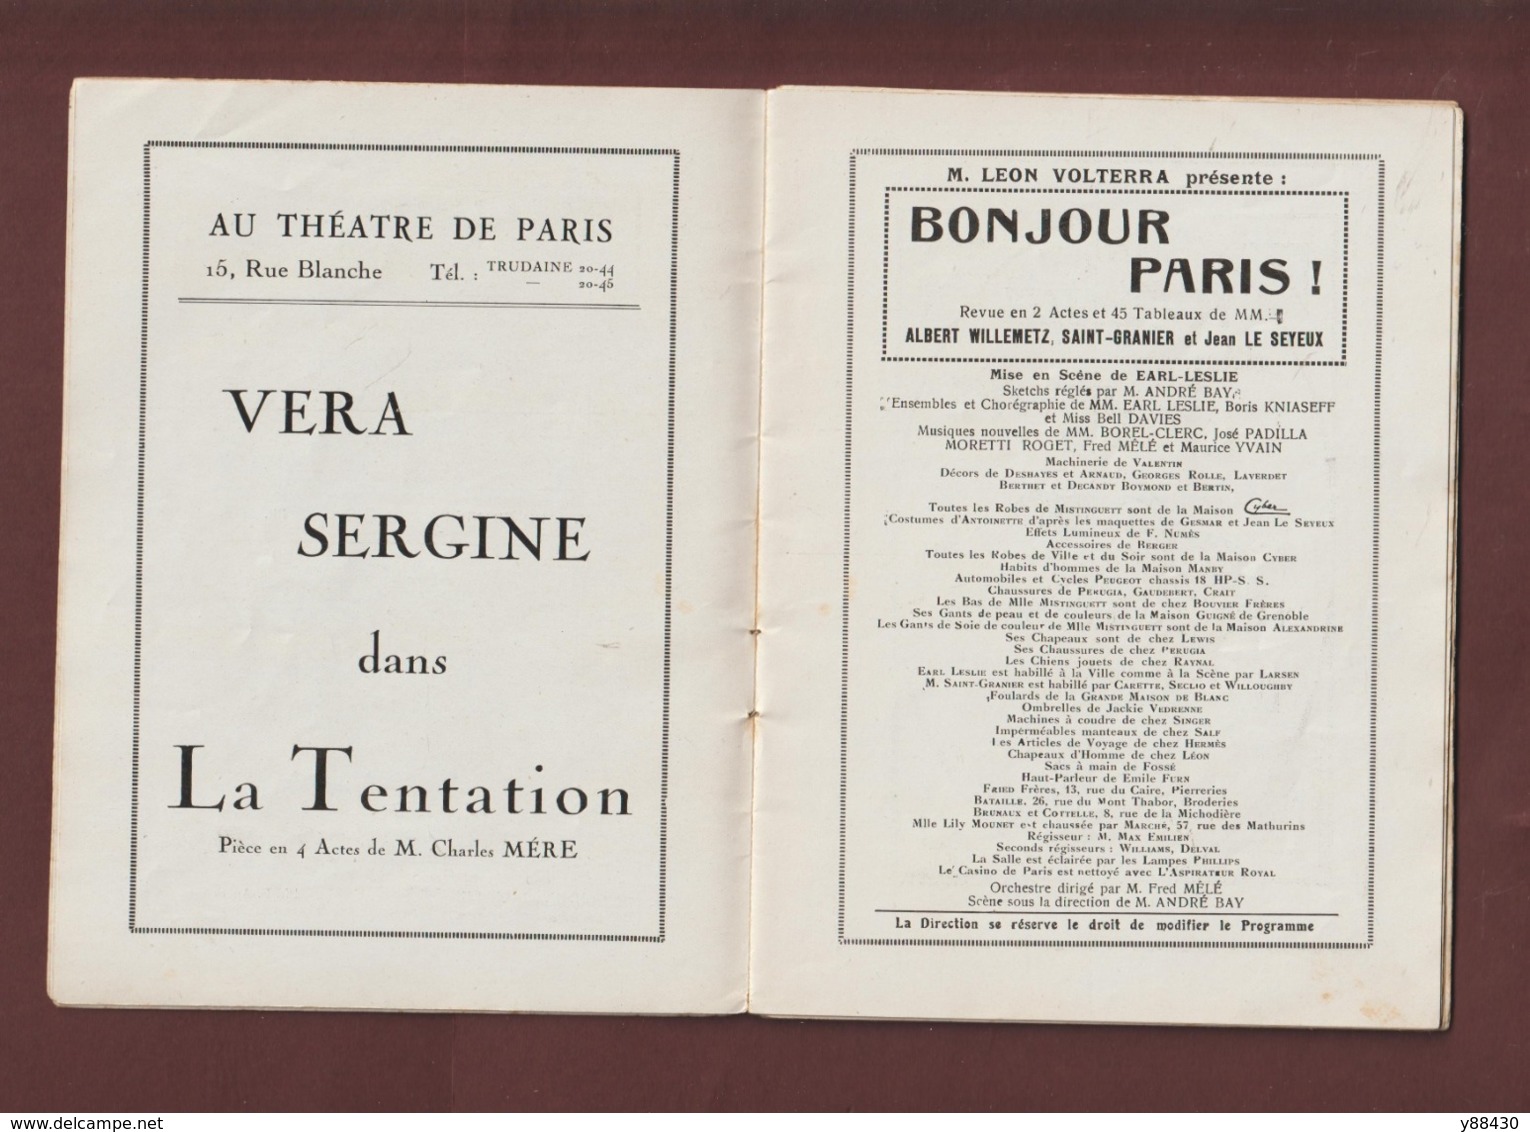 CASINO DE PARIS . Programme Revue saison 1924/1925 - Affiche de Charles Gesmar - Très belles PUB - 52 pages - 28 photos